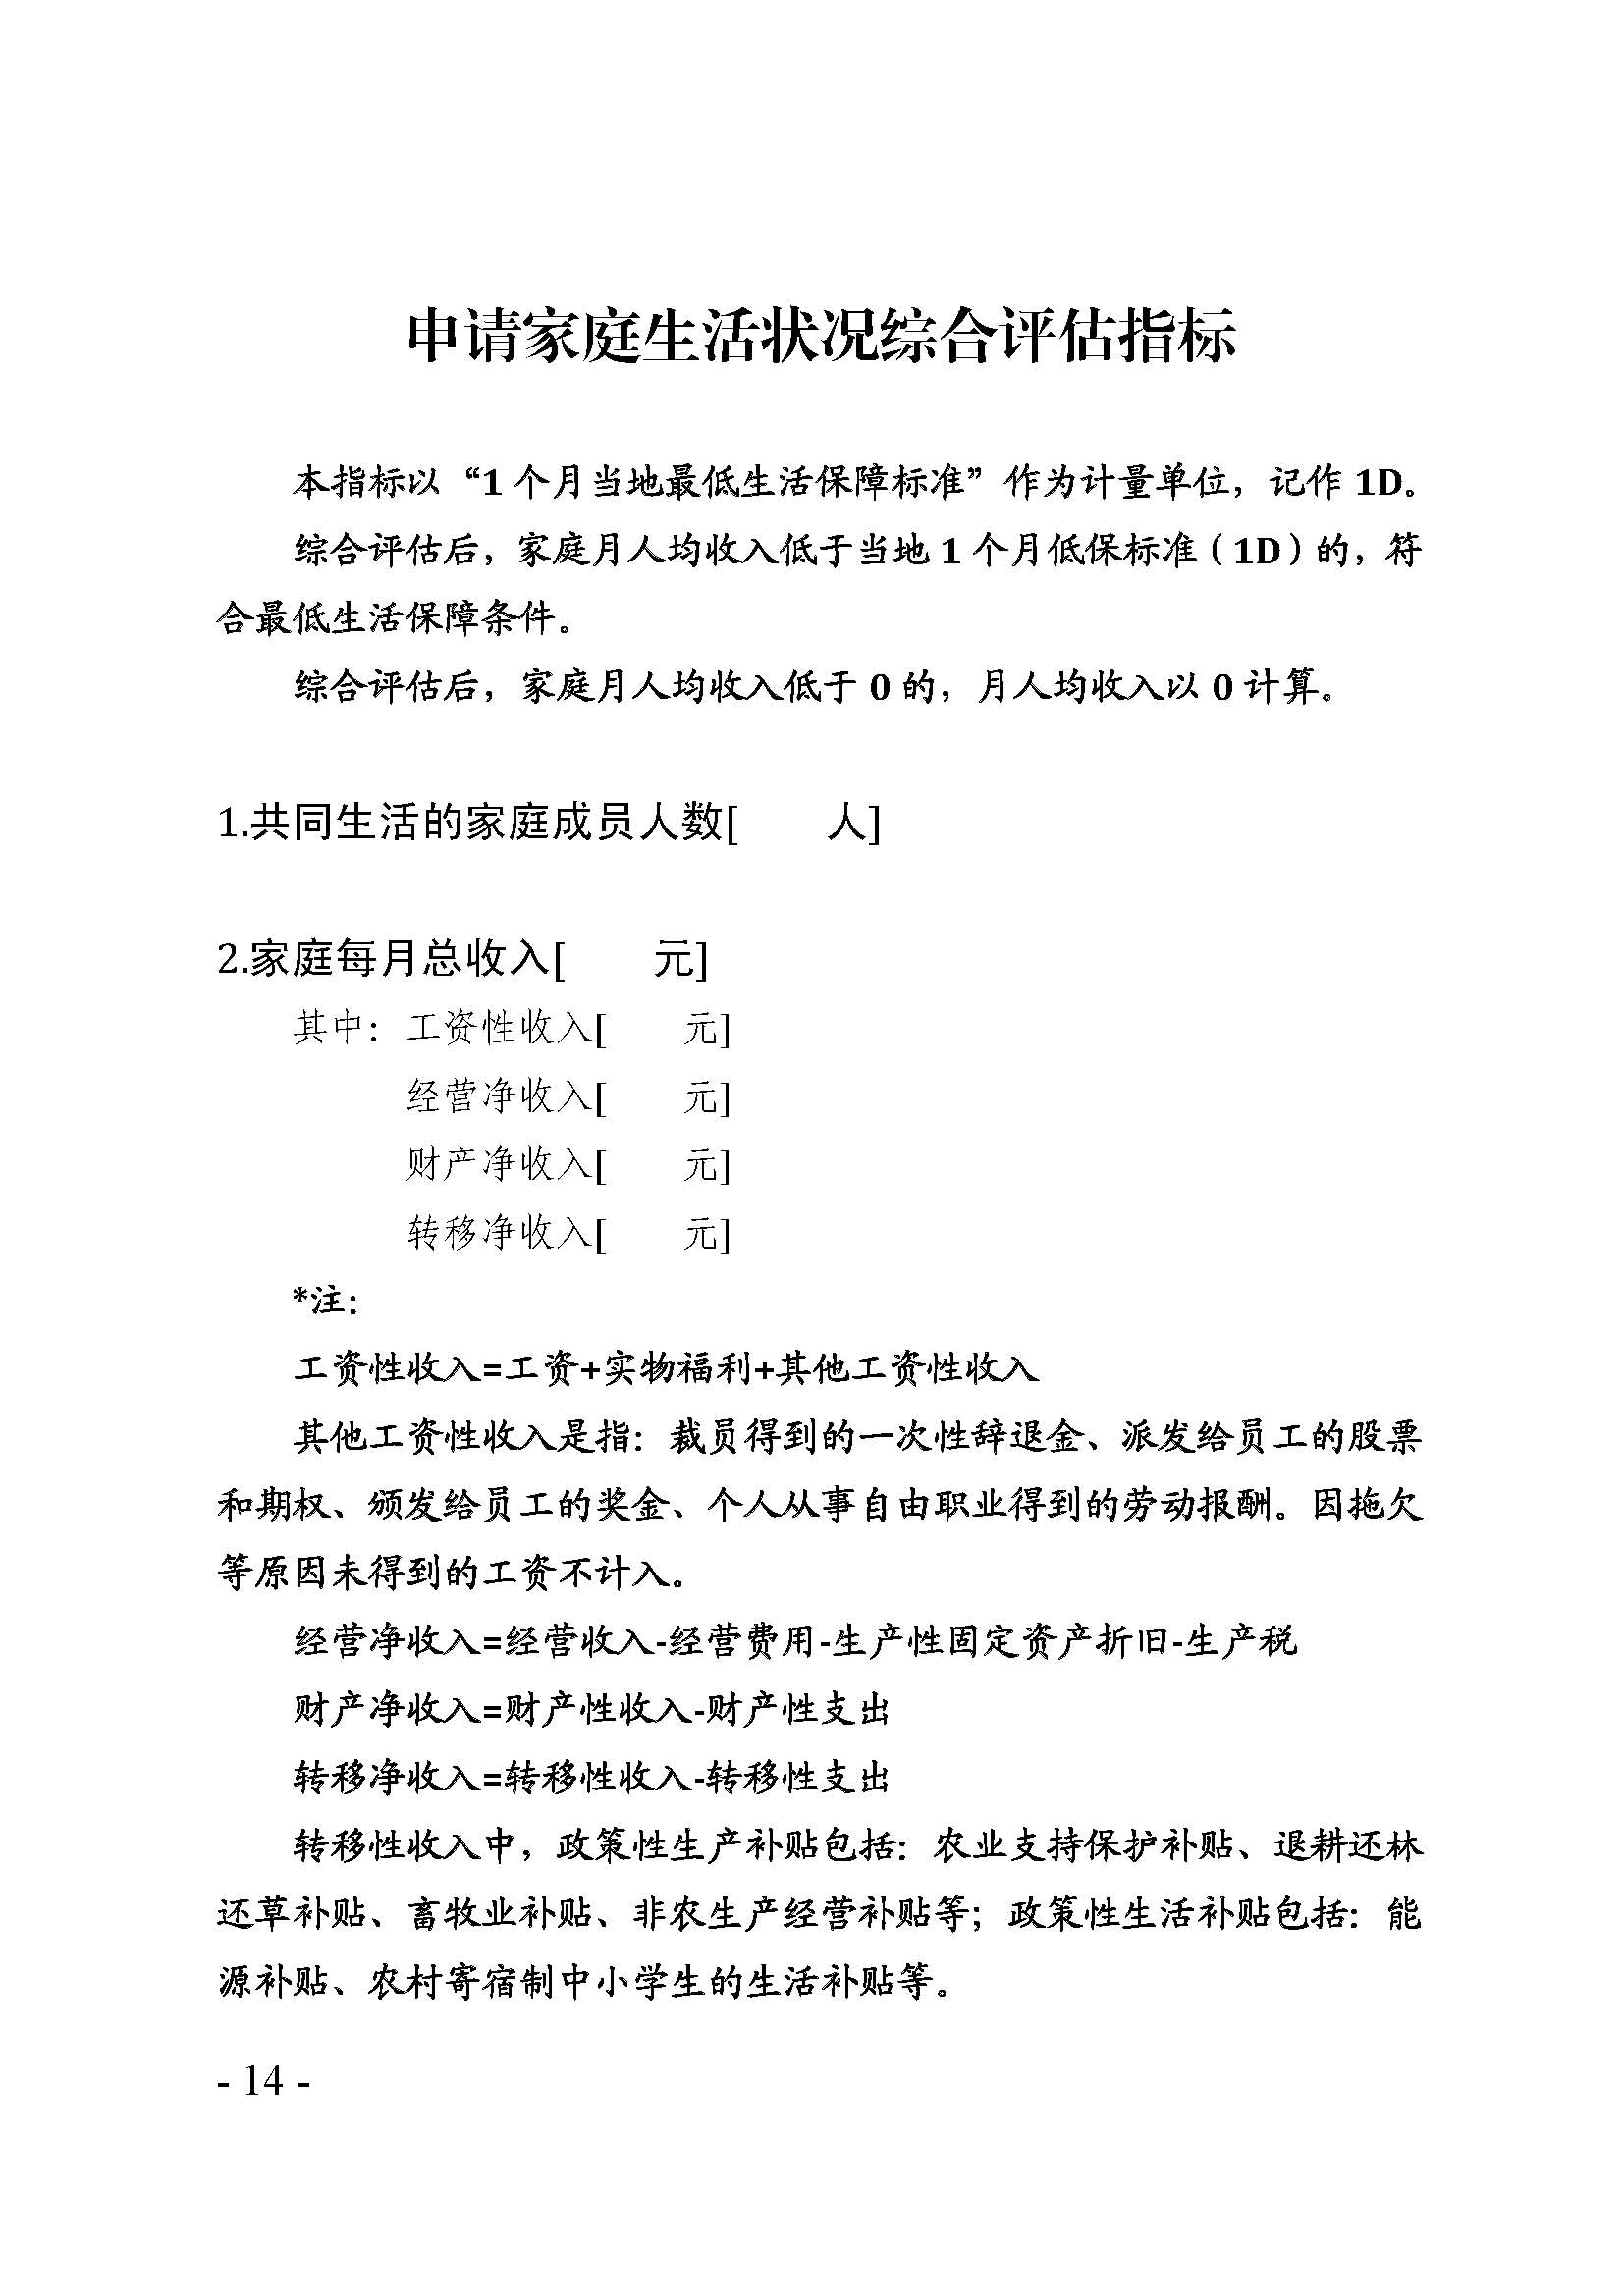 广东省最低生活保障家庭经济状况核对和生活状况评估认定办法_页面_14.jpg